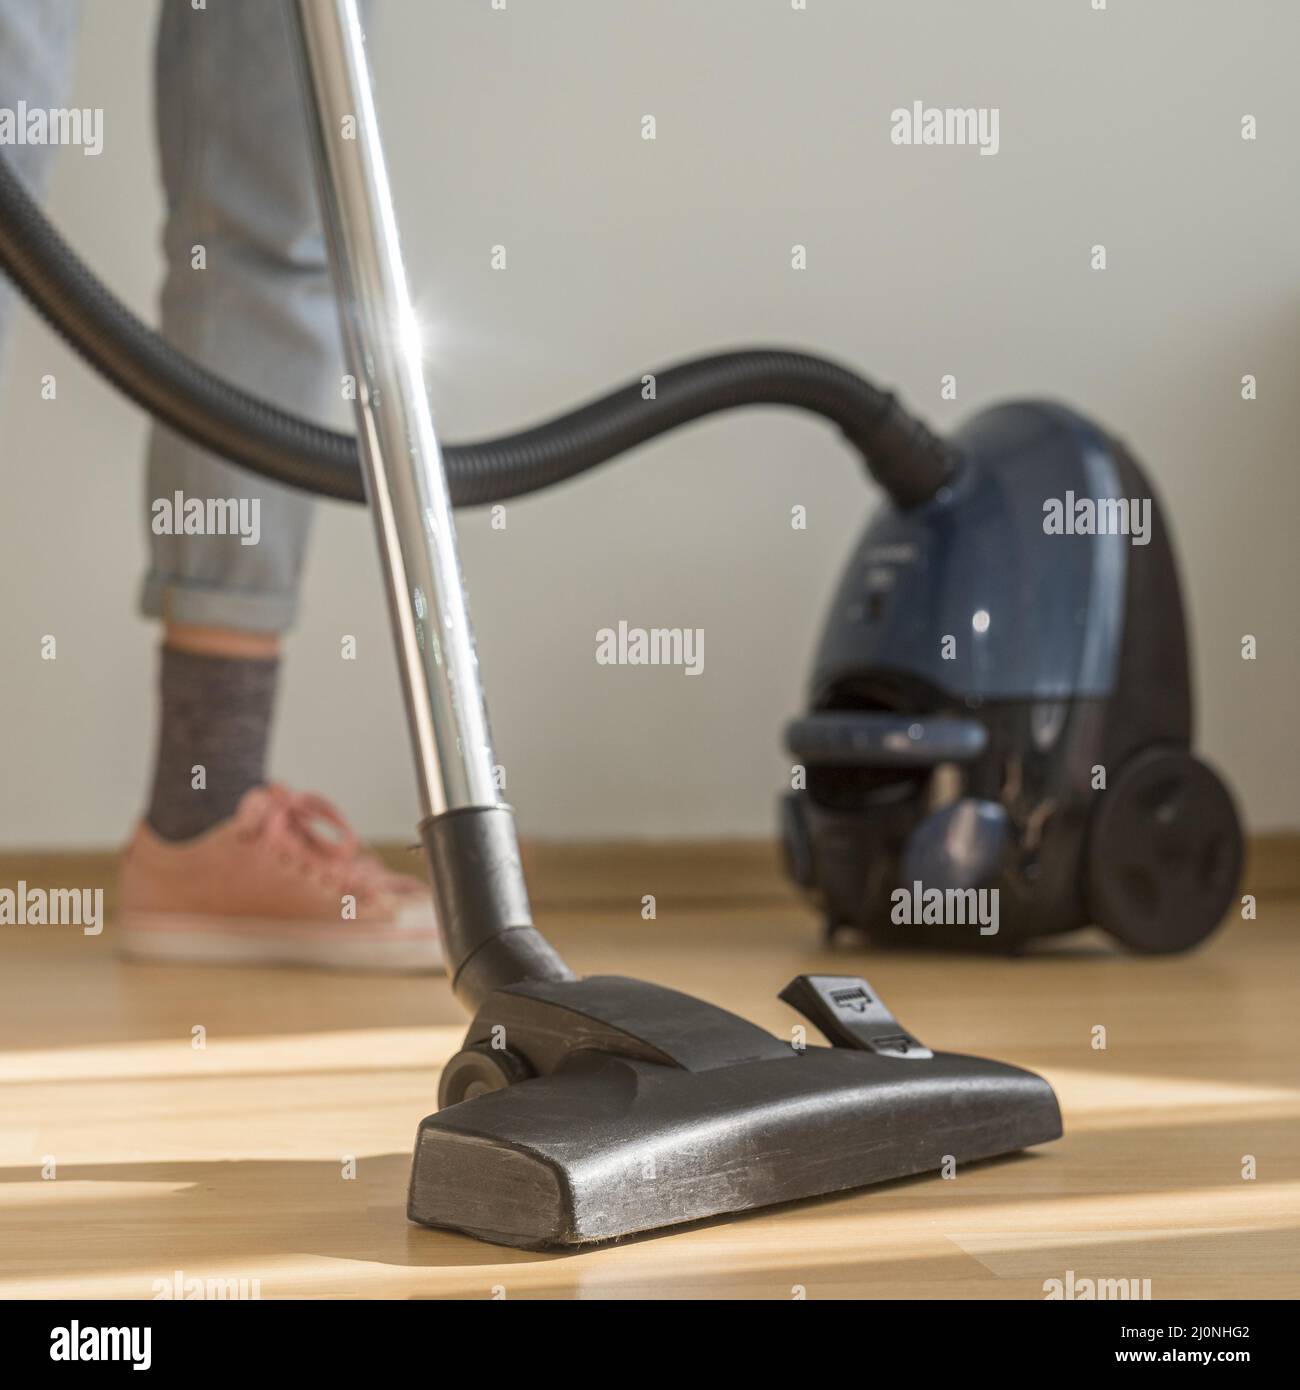 Frau, die den Raum mit Staubsauger putzt. Hohe Qualität und Auflösung schönes Fotokonzept Stockfoto